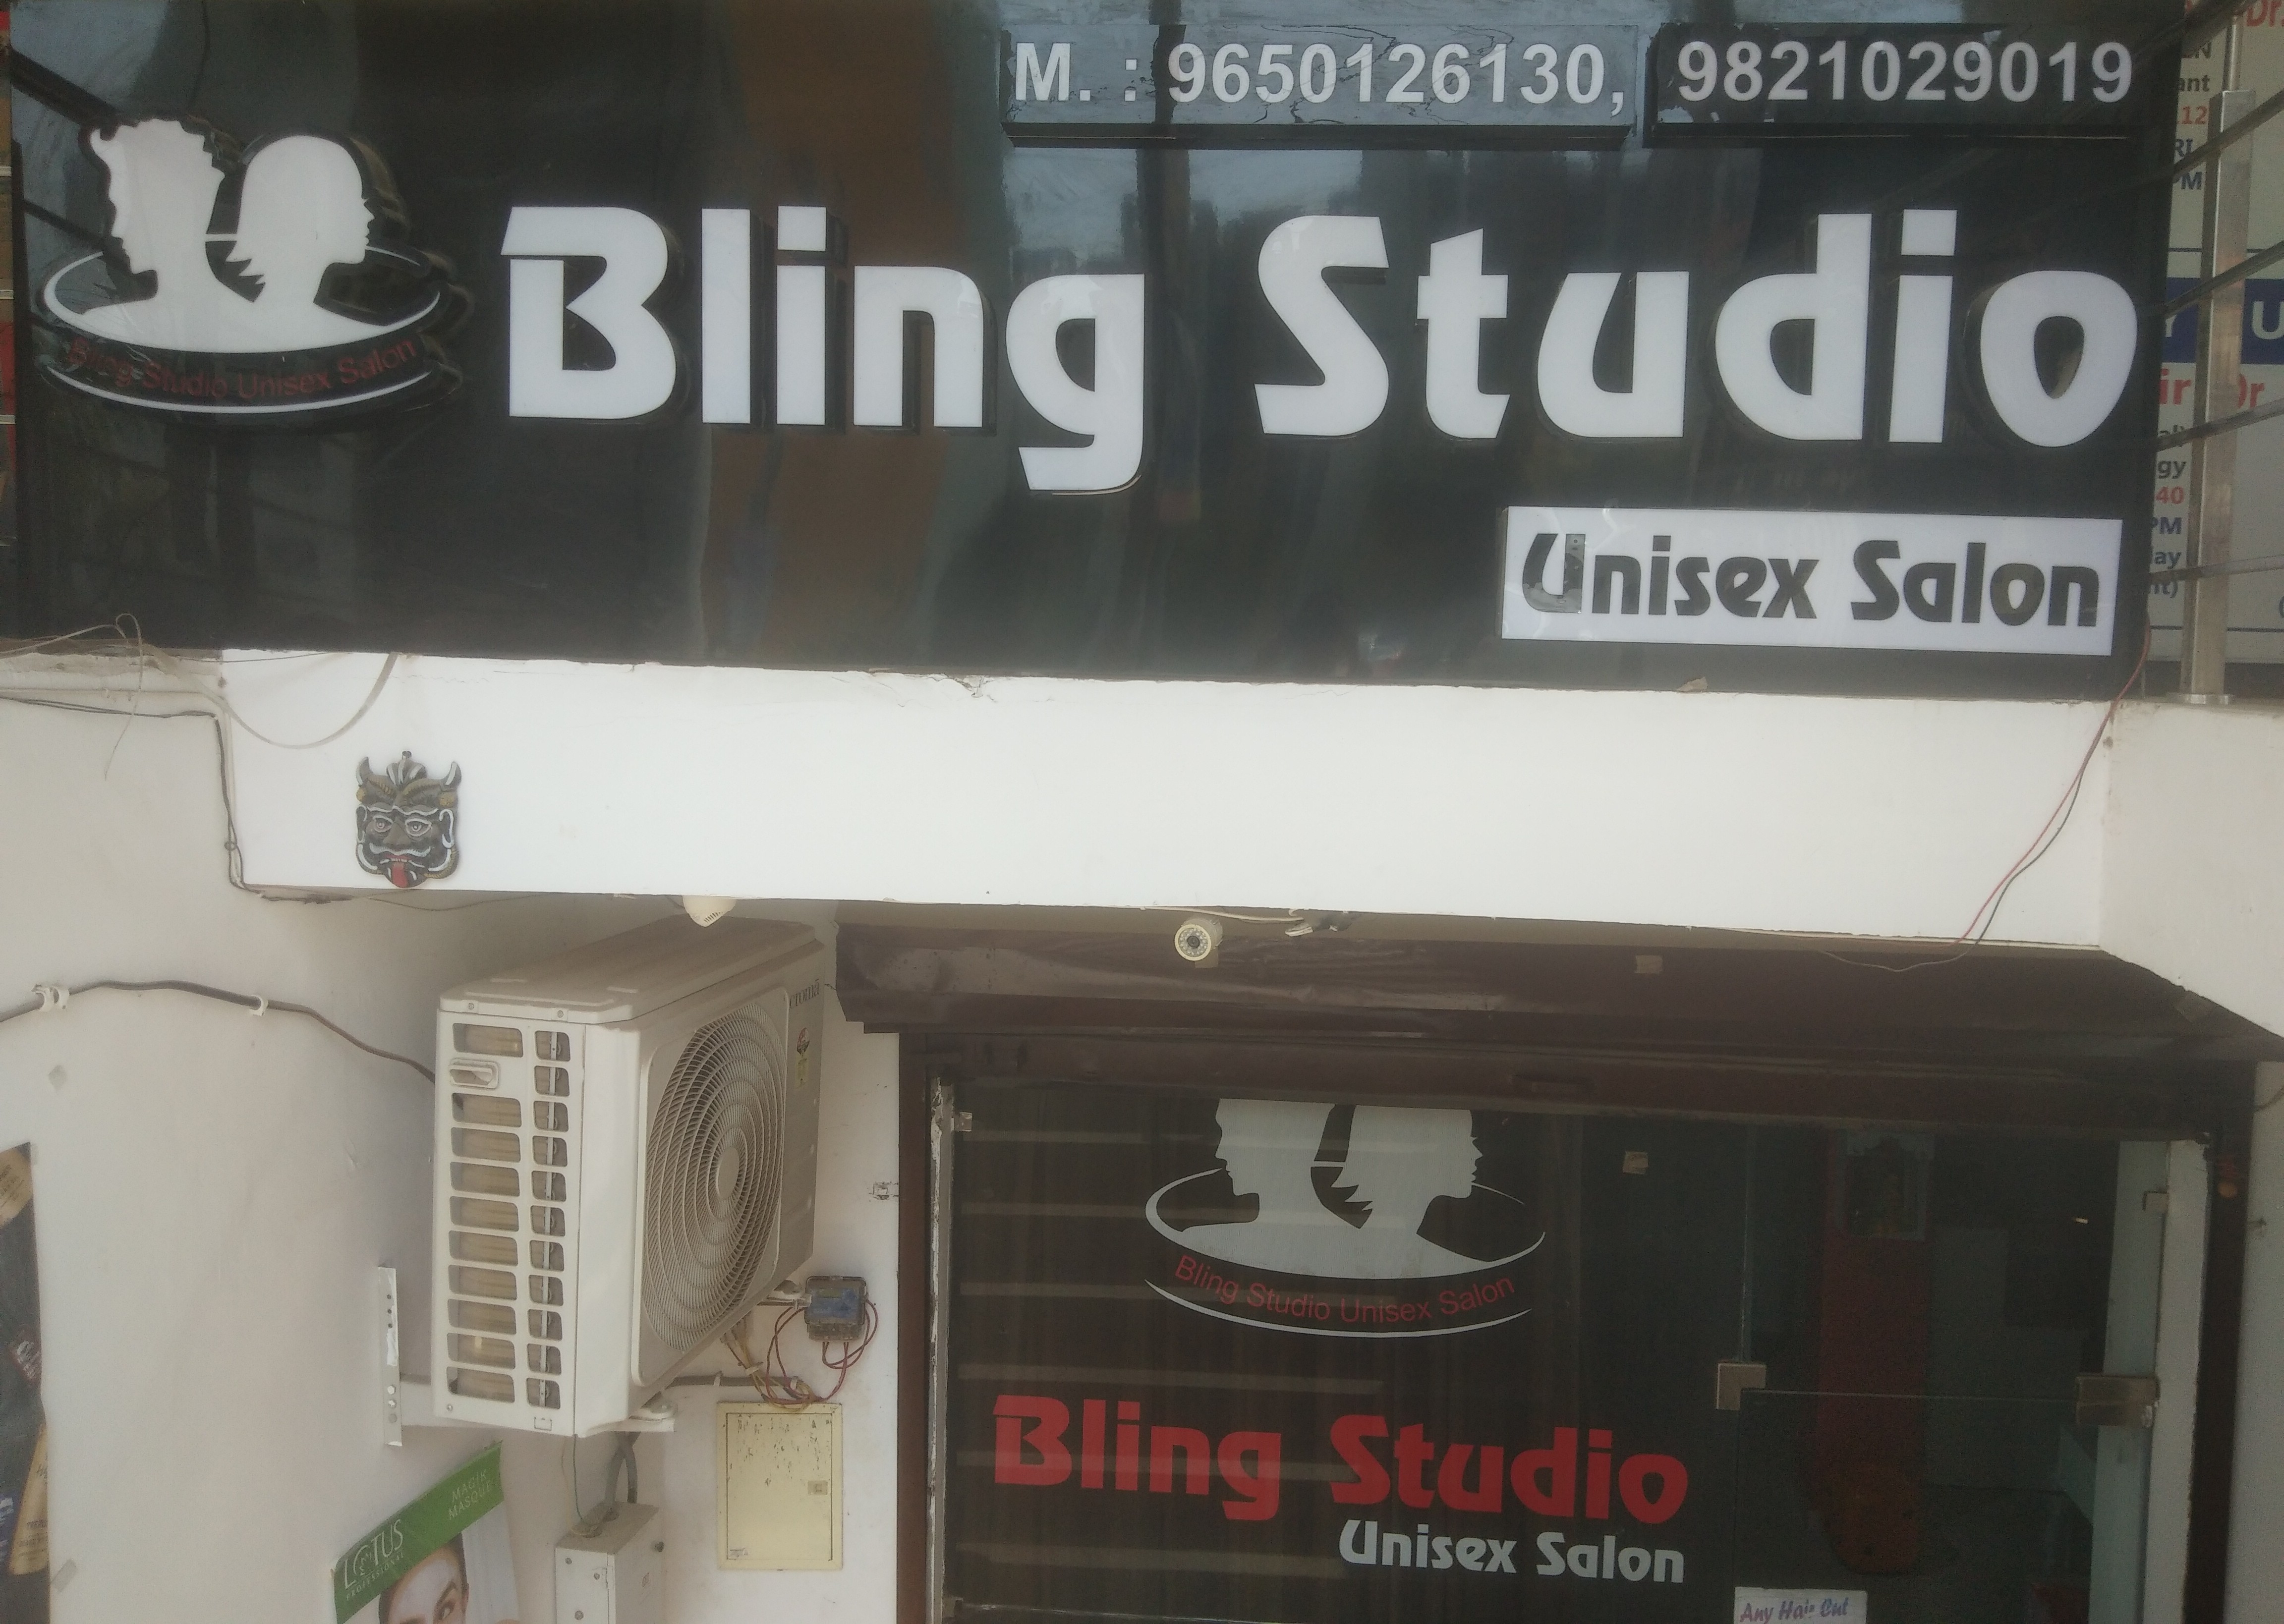 Bling studio unisex salon in Sector 82, Faridabad-121002 | Sulekha Faridabad